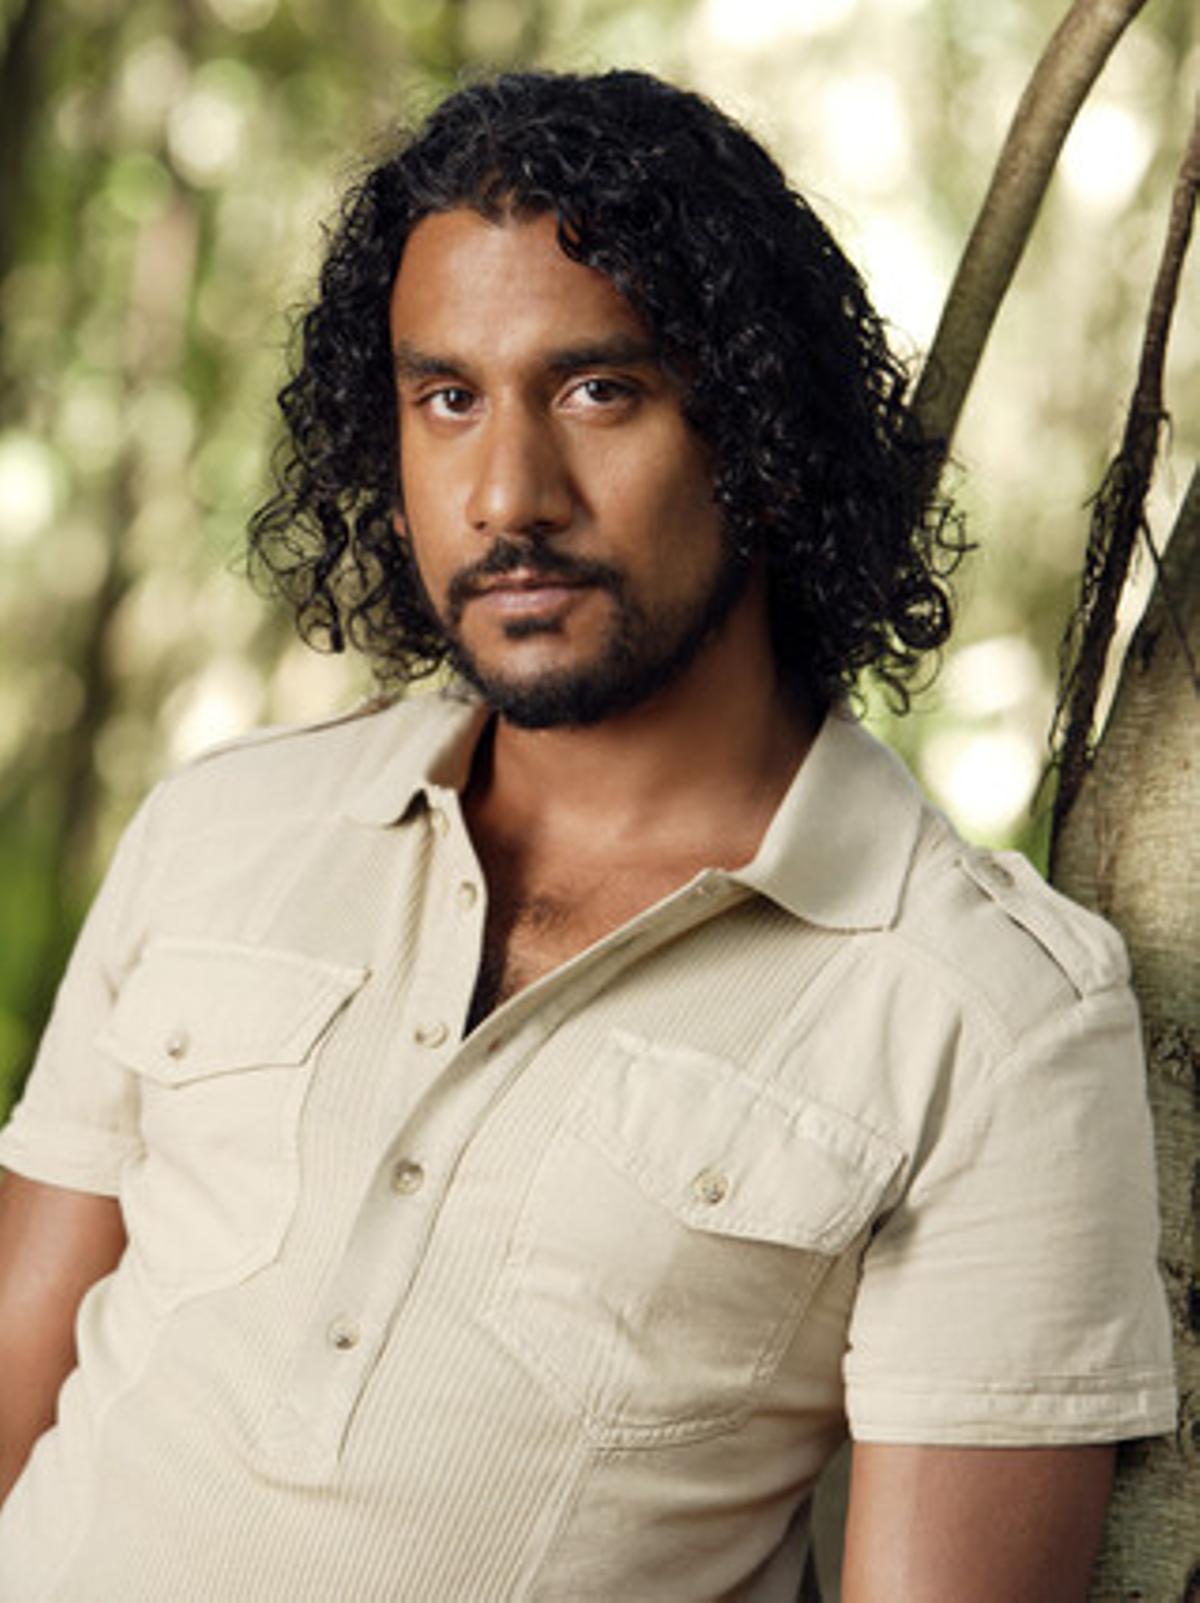 Hombre valiente y líder competente, Sayid (Naveen Andrews)  ha desempeñado un papel clave para la supervivencia del grupo gracias a sus numerosas habilidades.